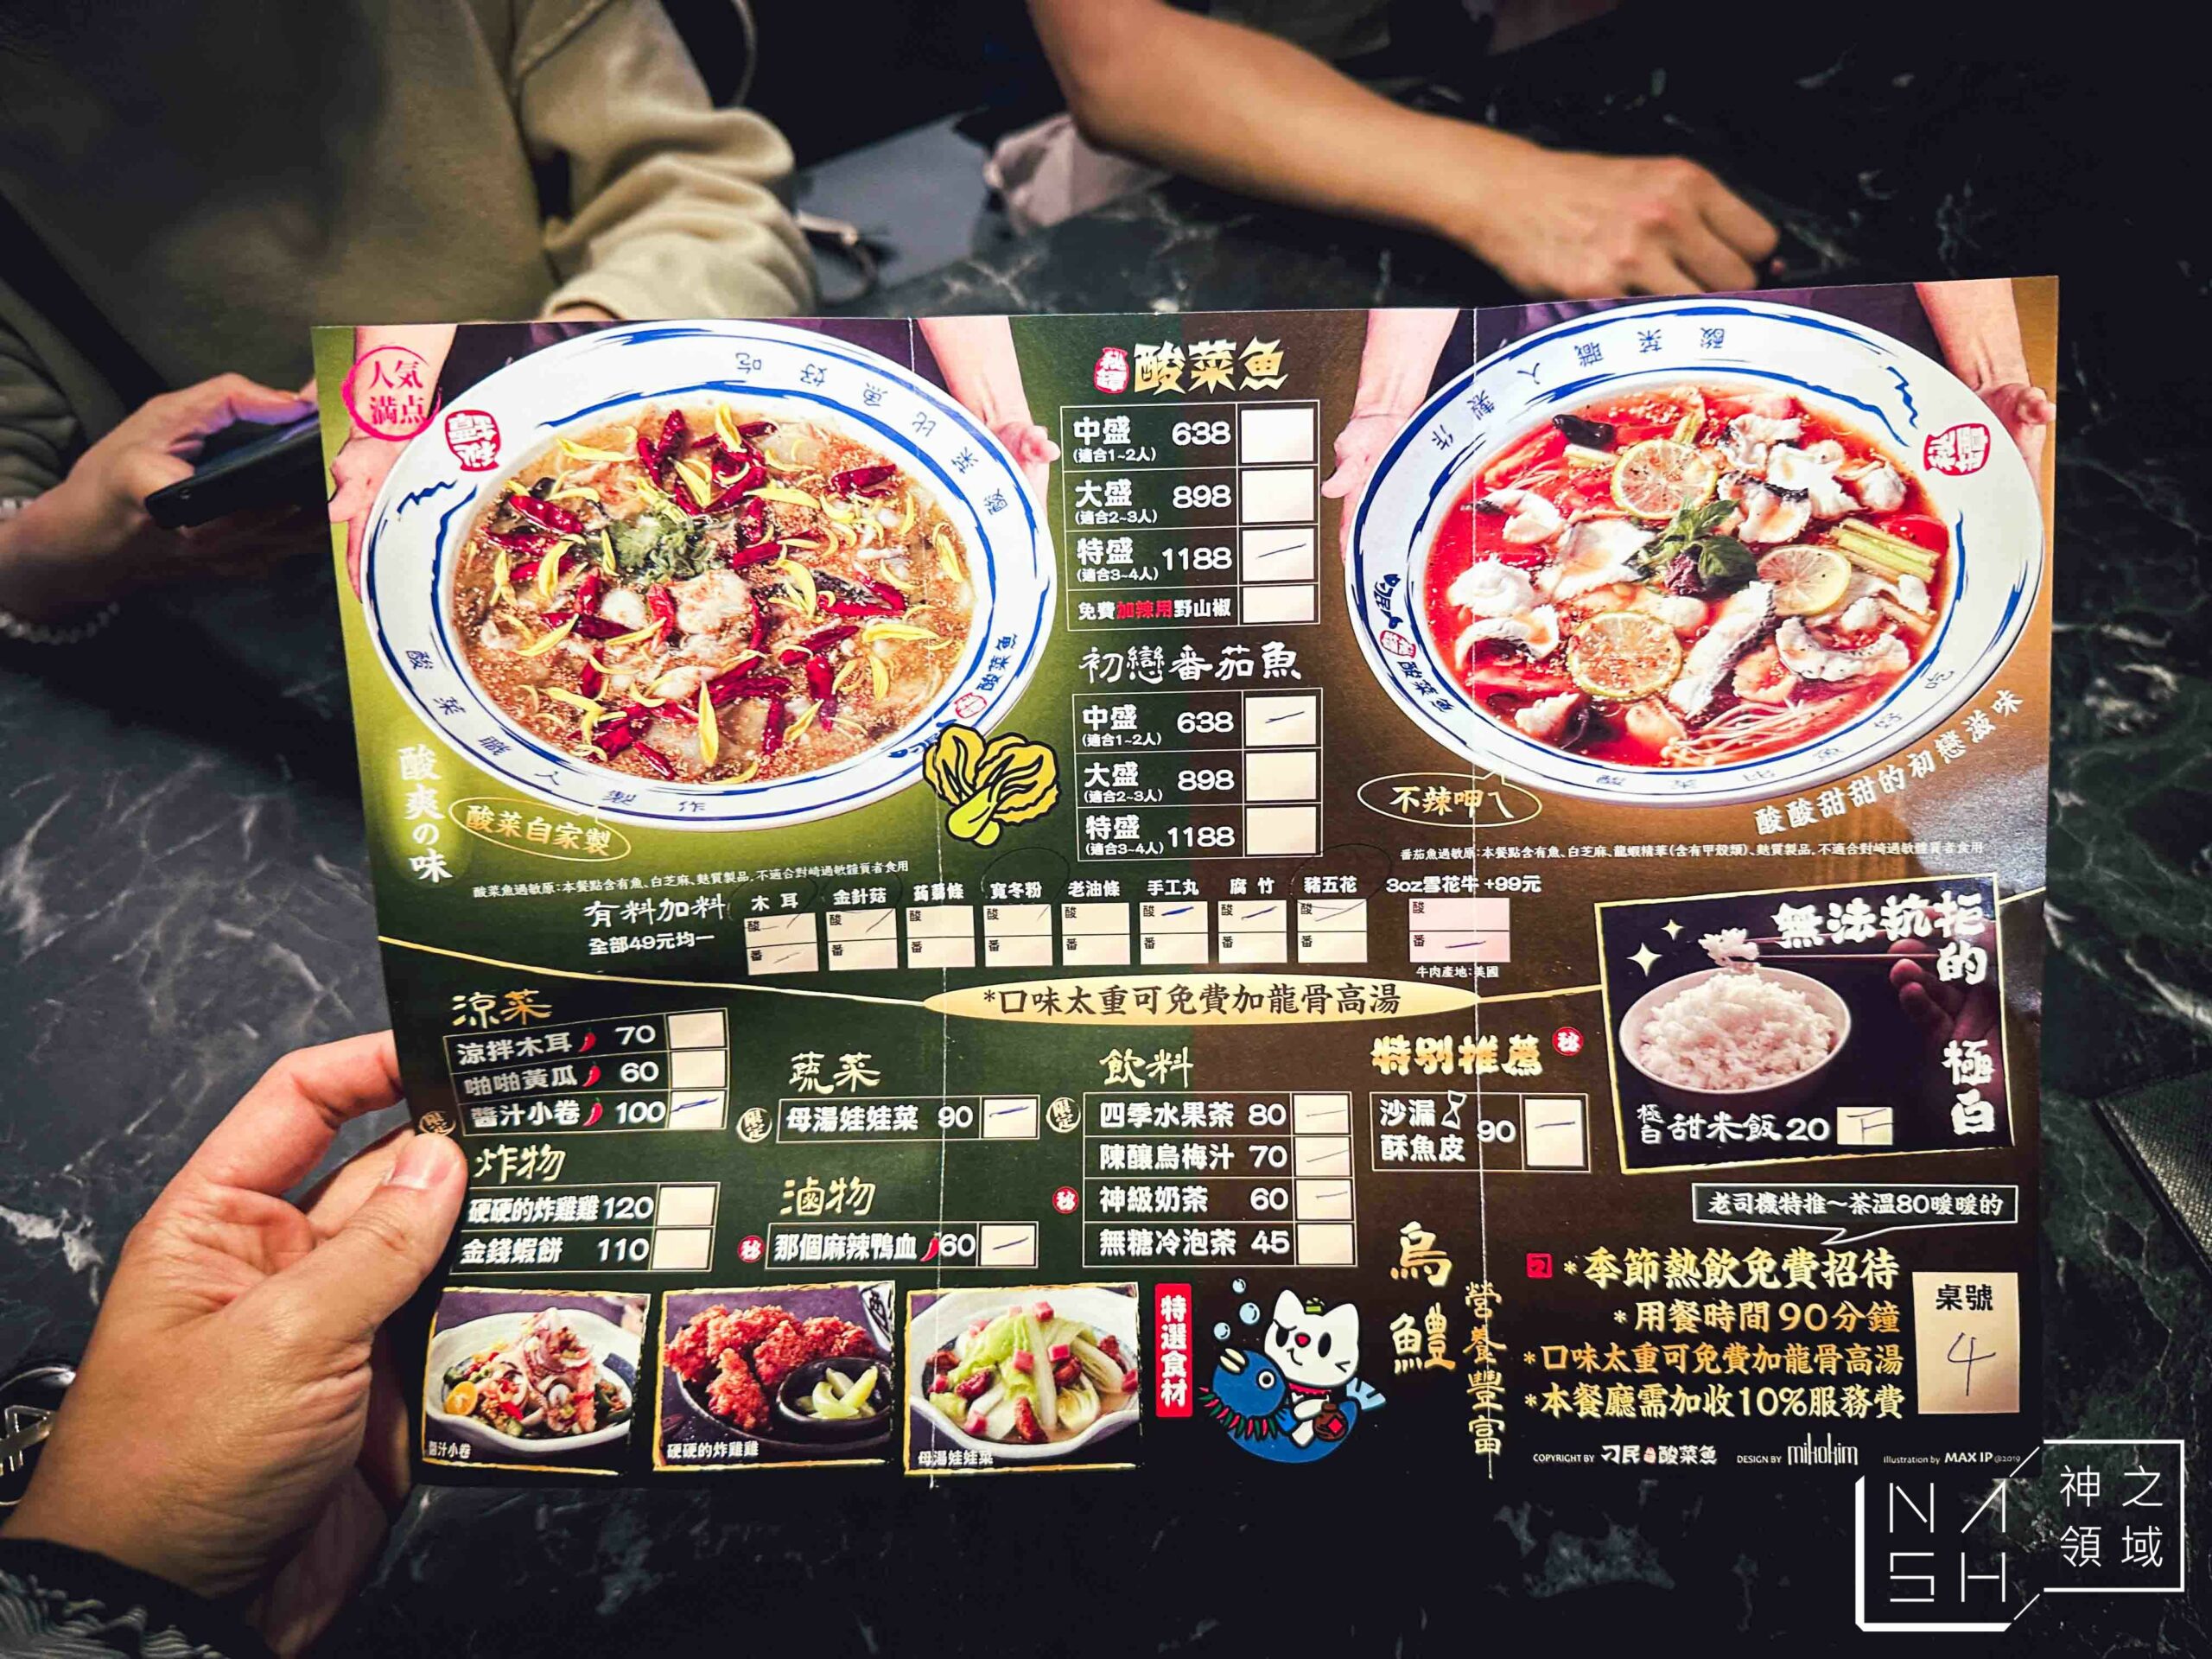 刁民酸菜魚台北信義店